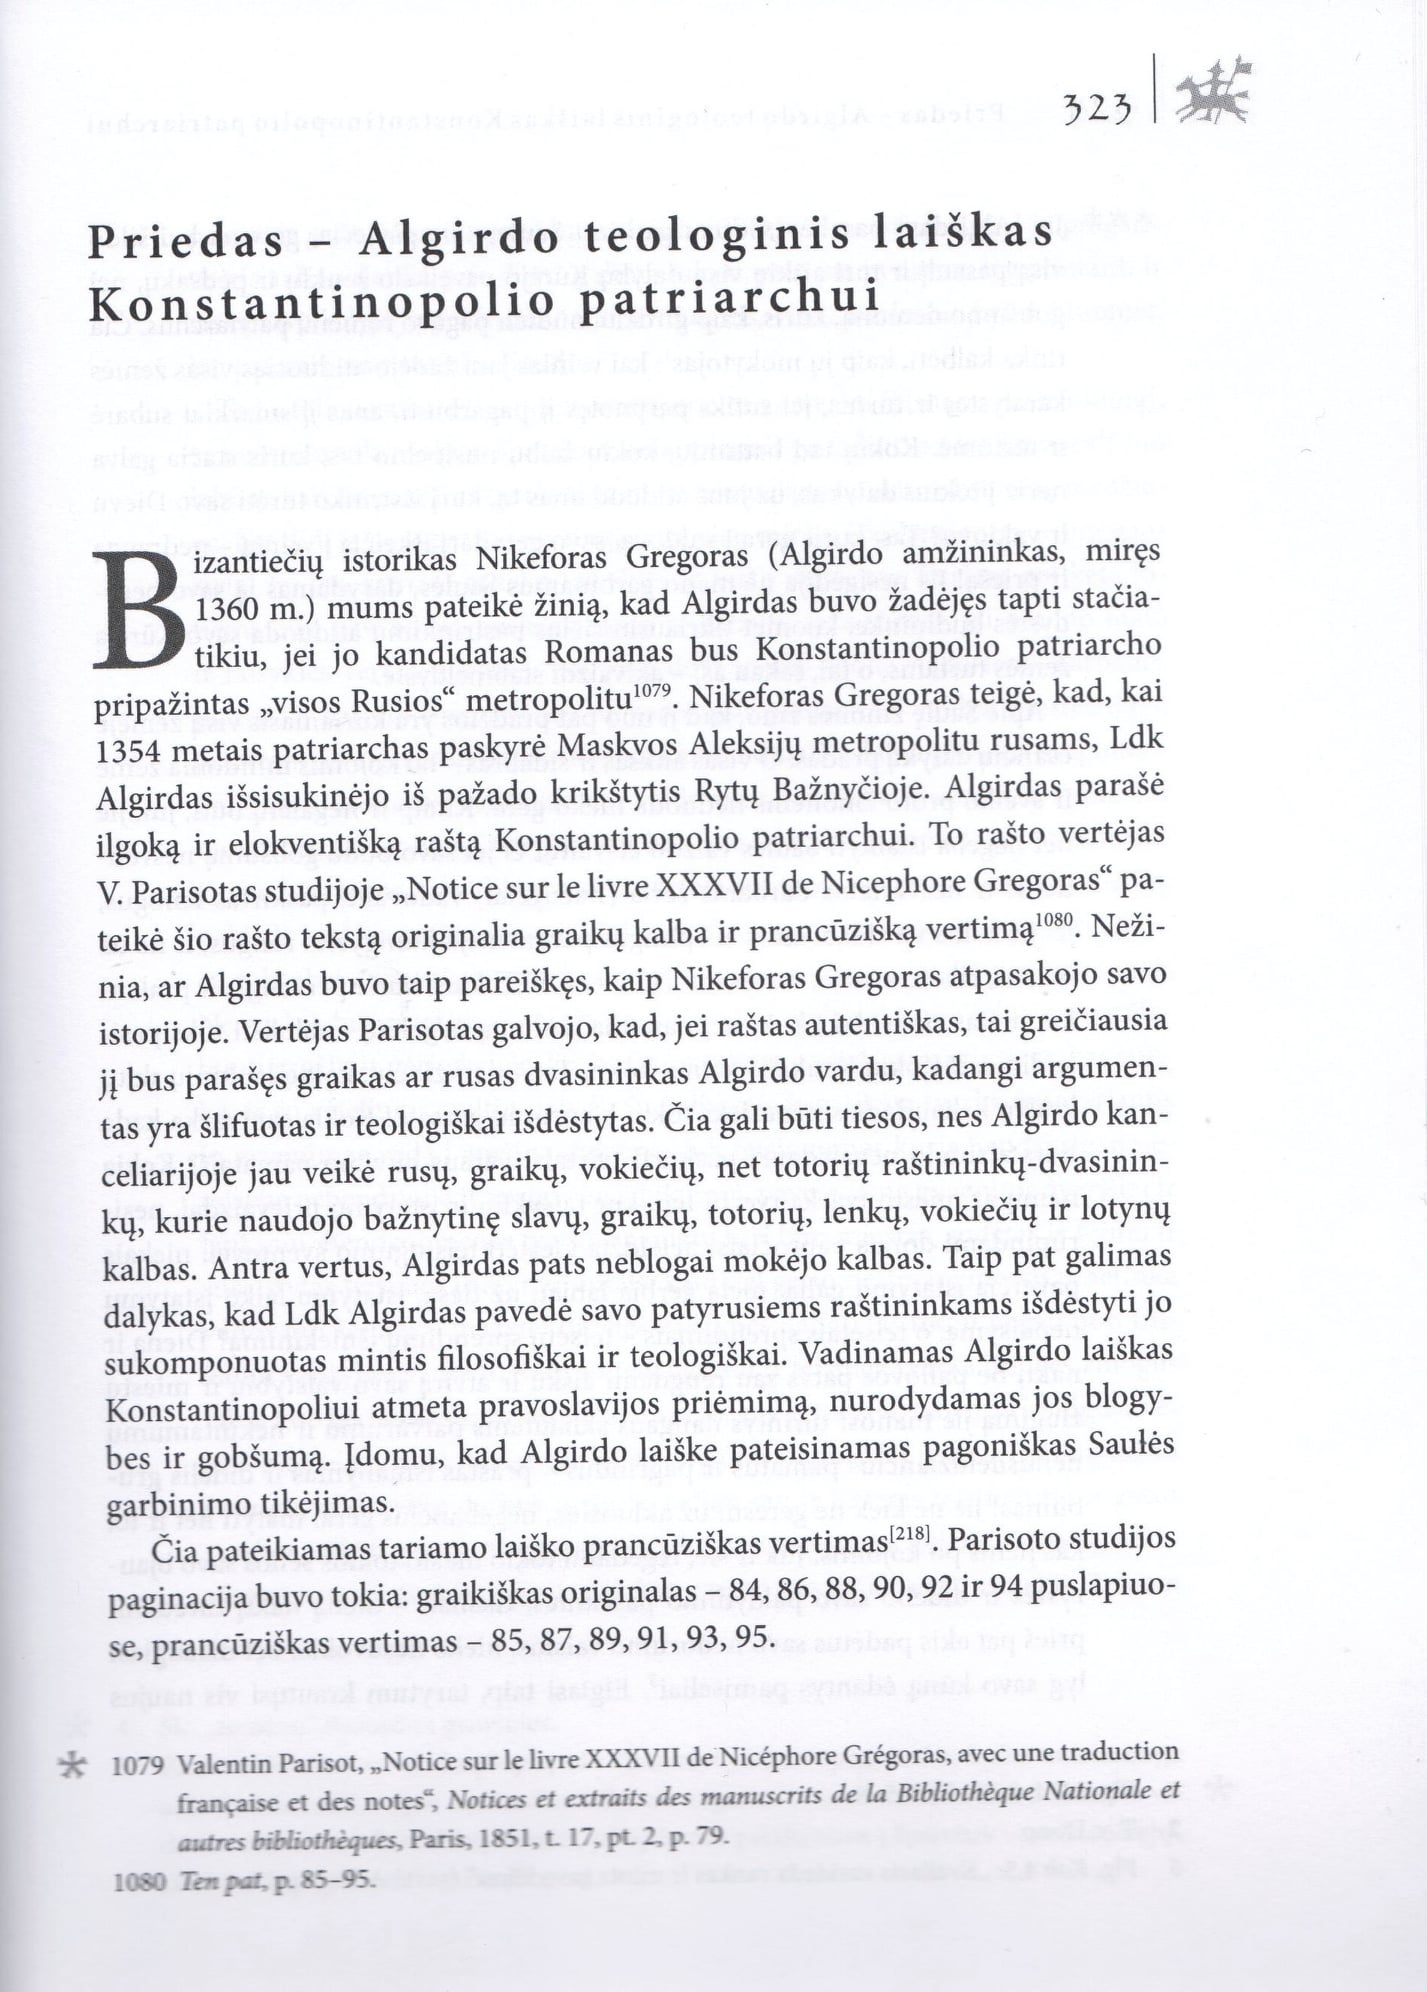 Algirdo teologinis laiškas Konstantinopolio patriarchui.jpg